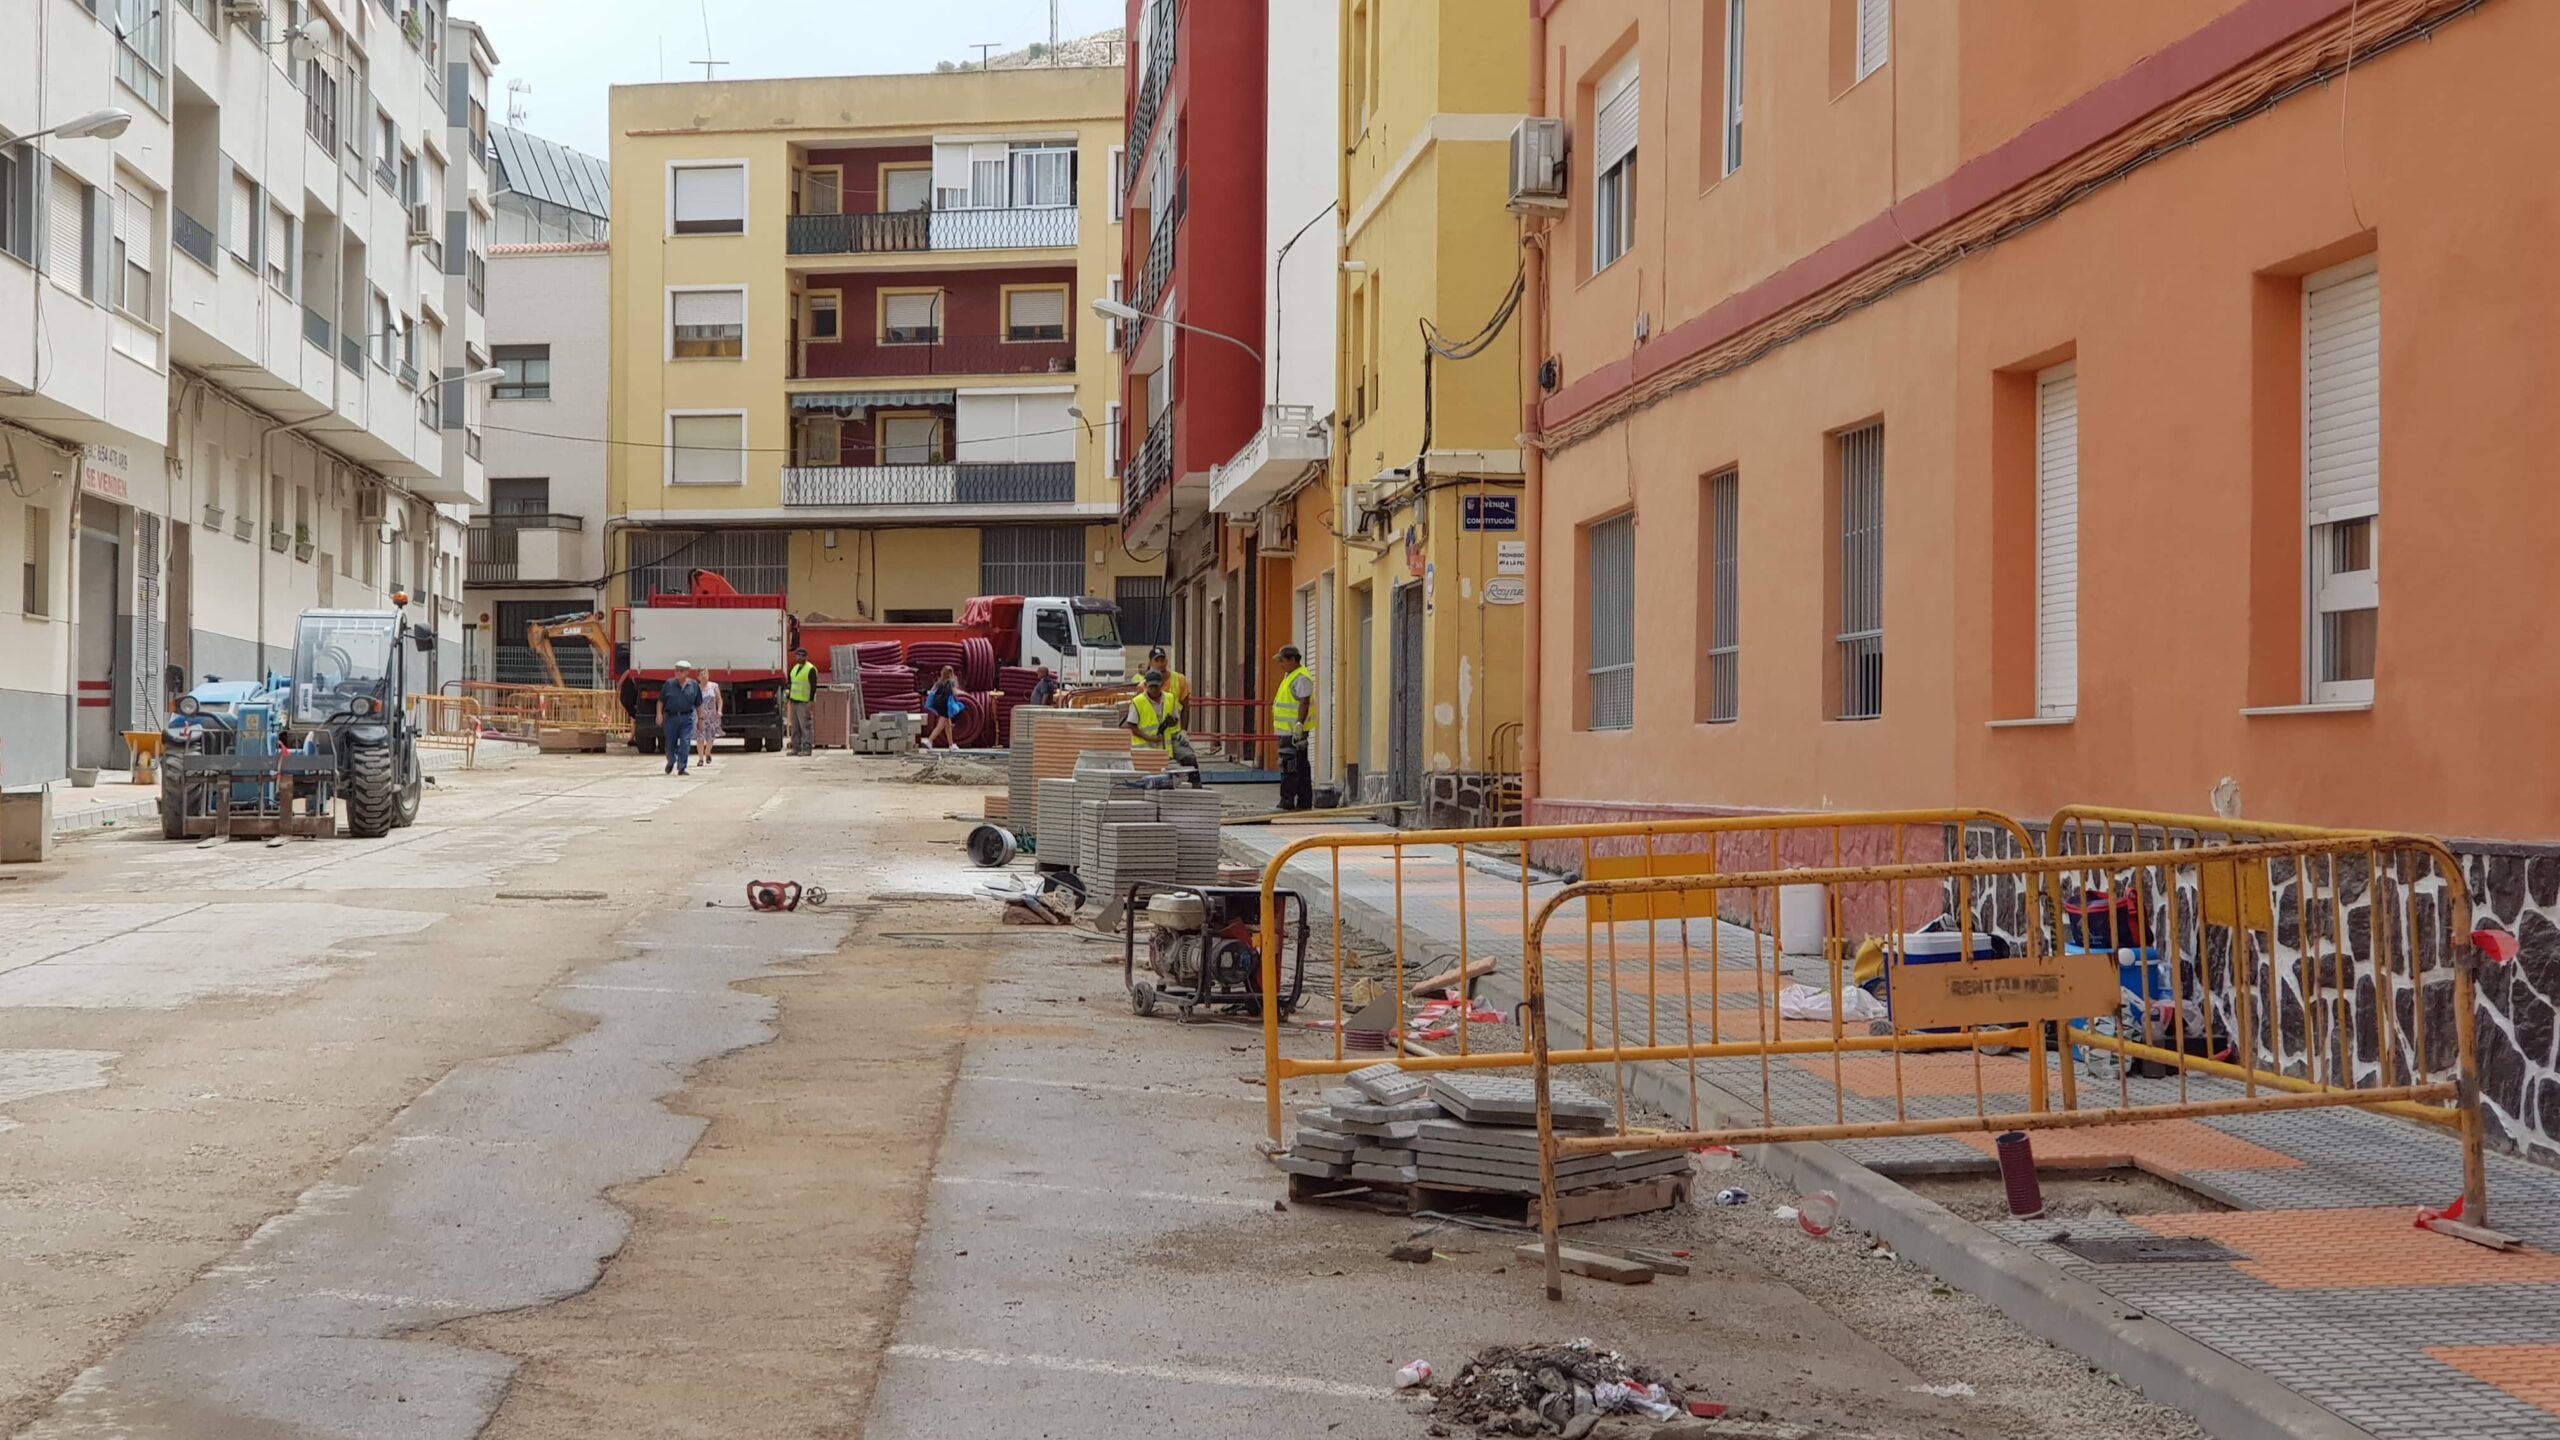 Los vecinos de La Paz denuncian varios “despropósitos” en las obras en la calle Maestro Francisco Bravo